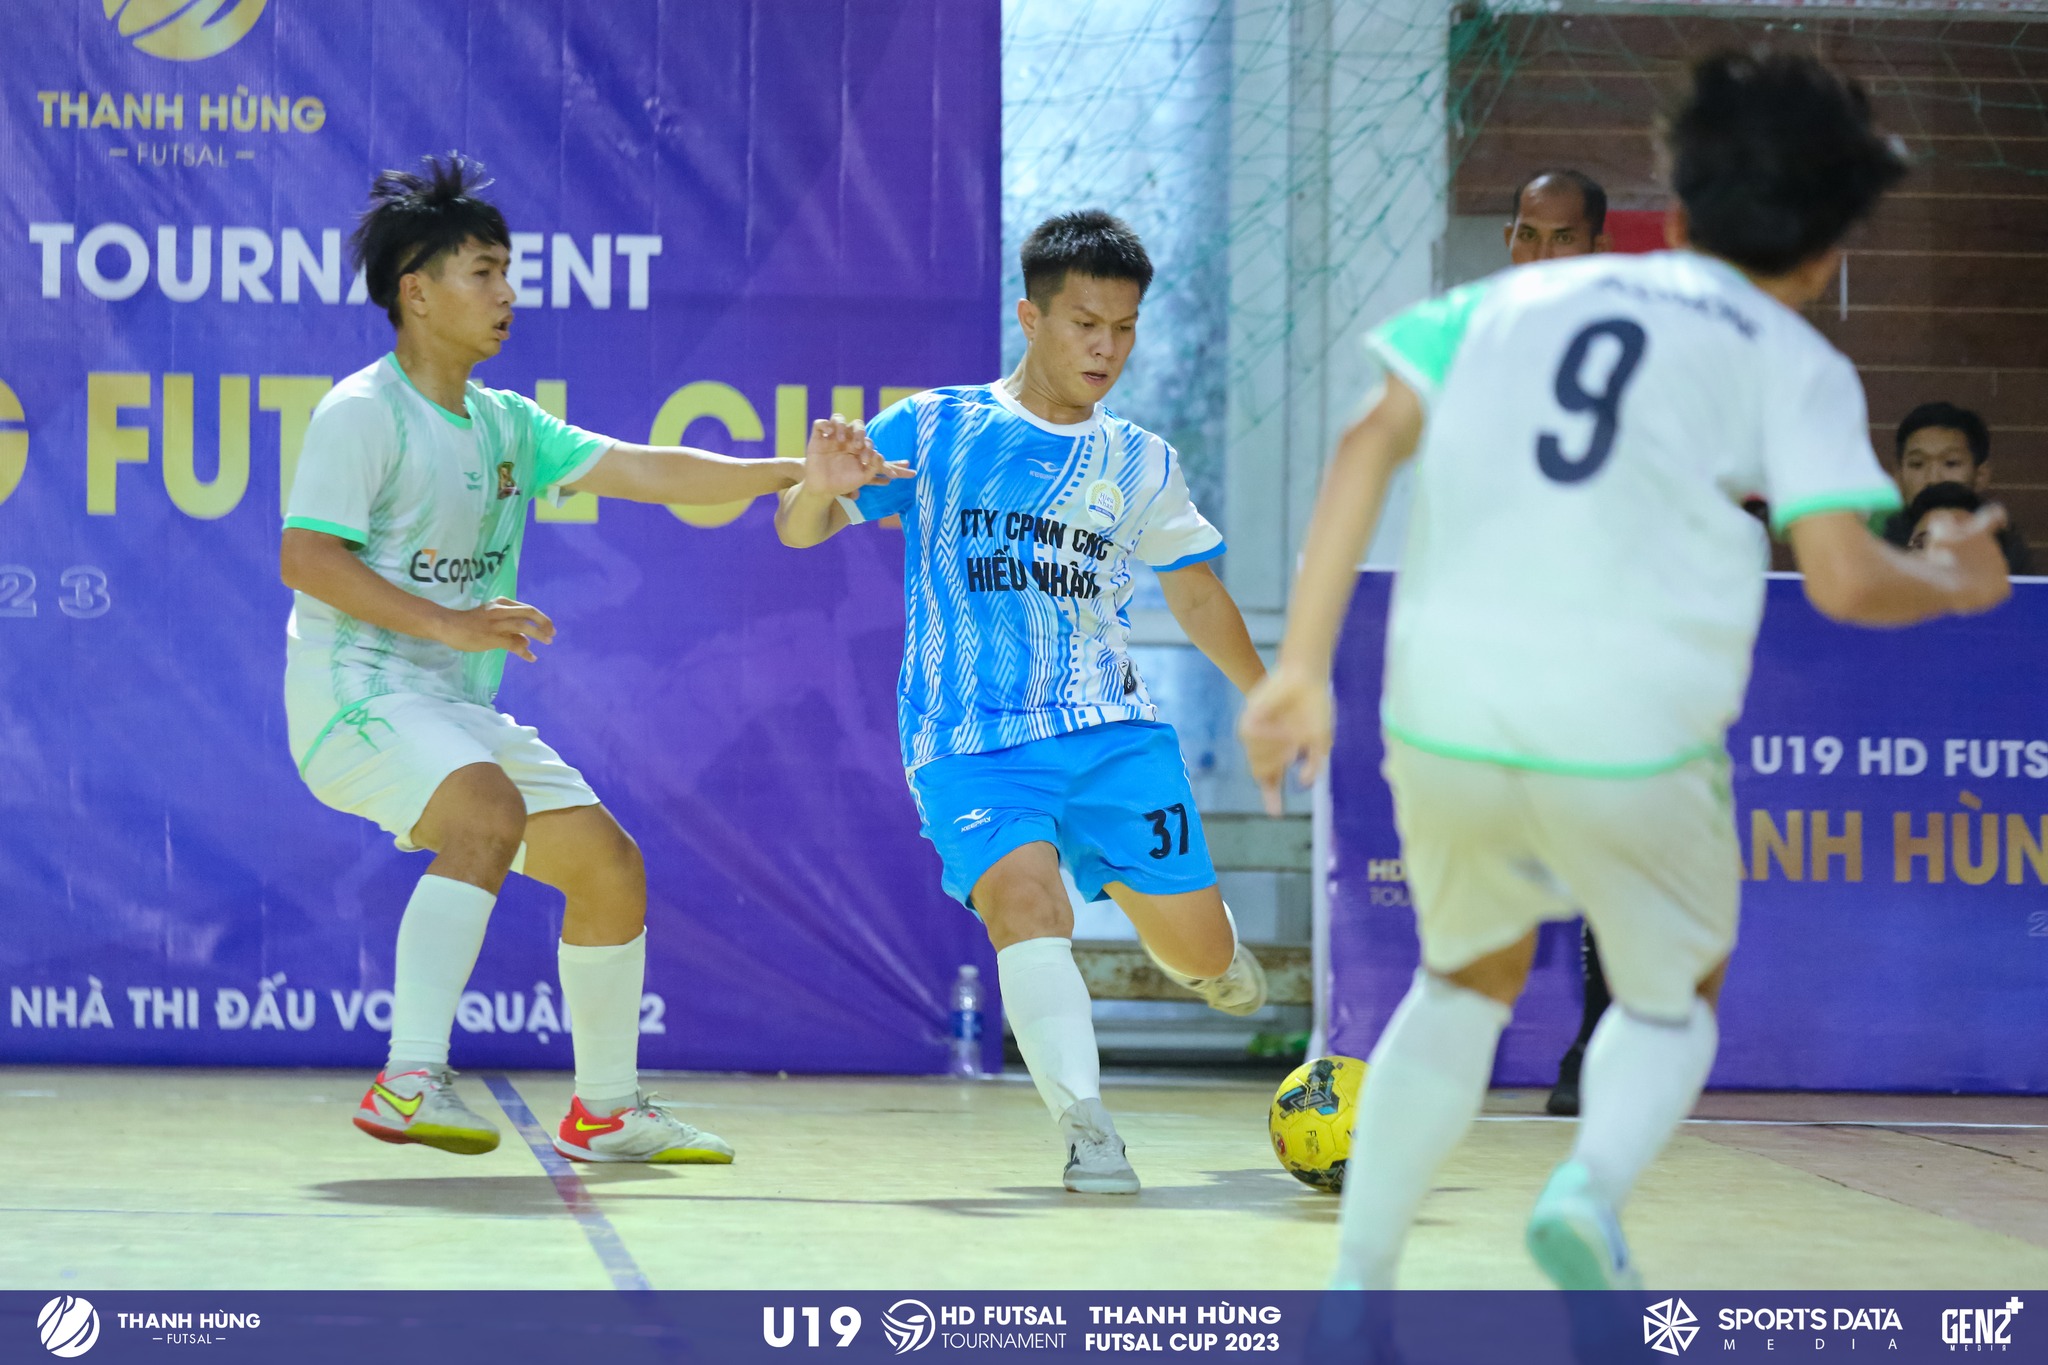 U19 HD Futsal Tournament  